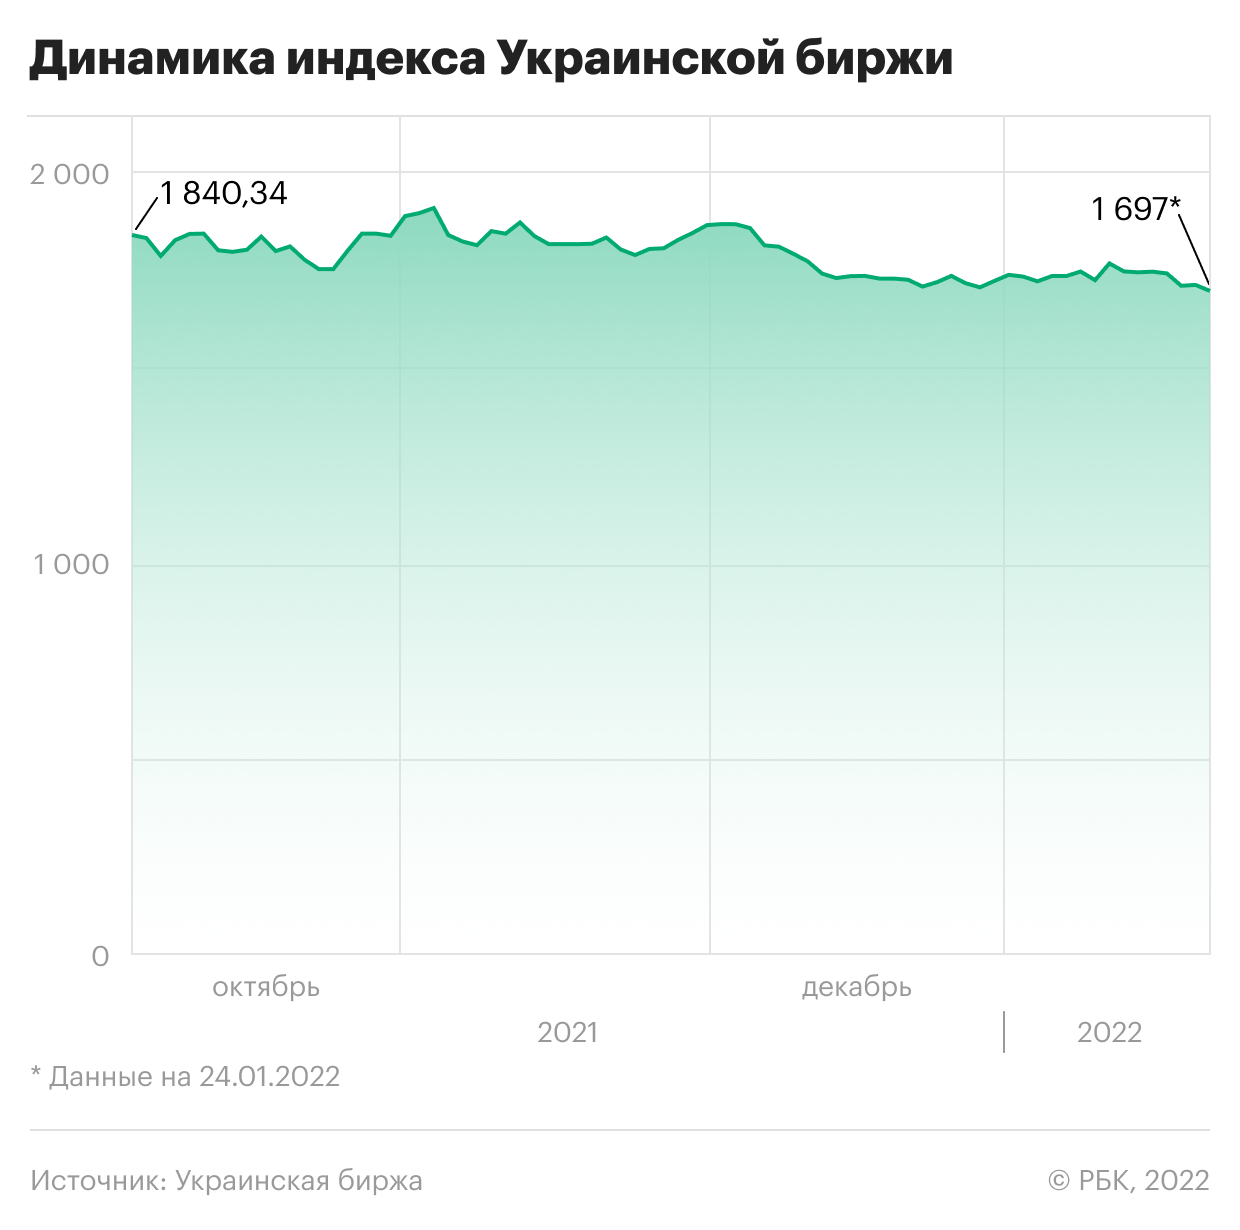 Реакция украинских гривны, биржи и бондов на угрозу войны. Инфографика